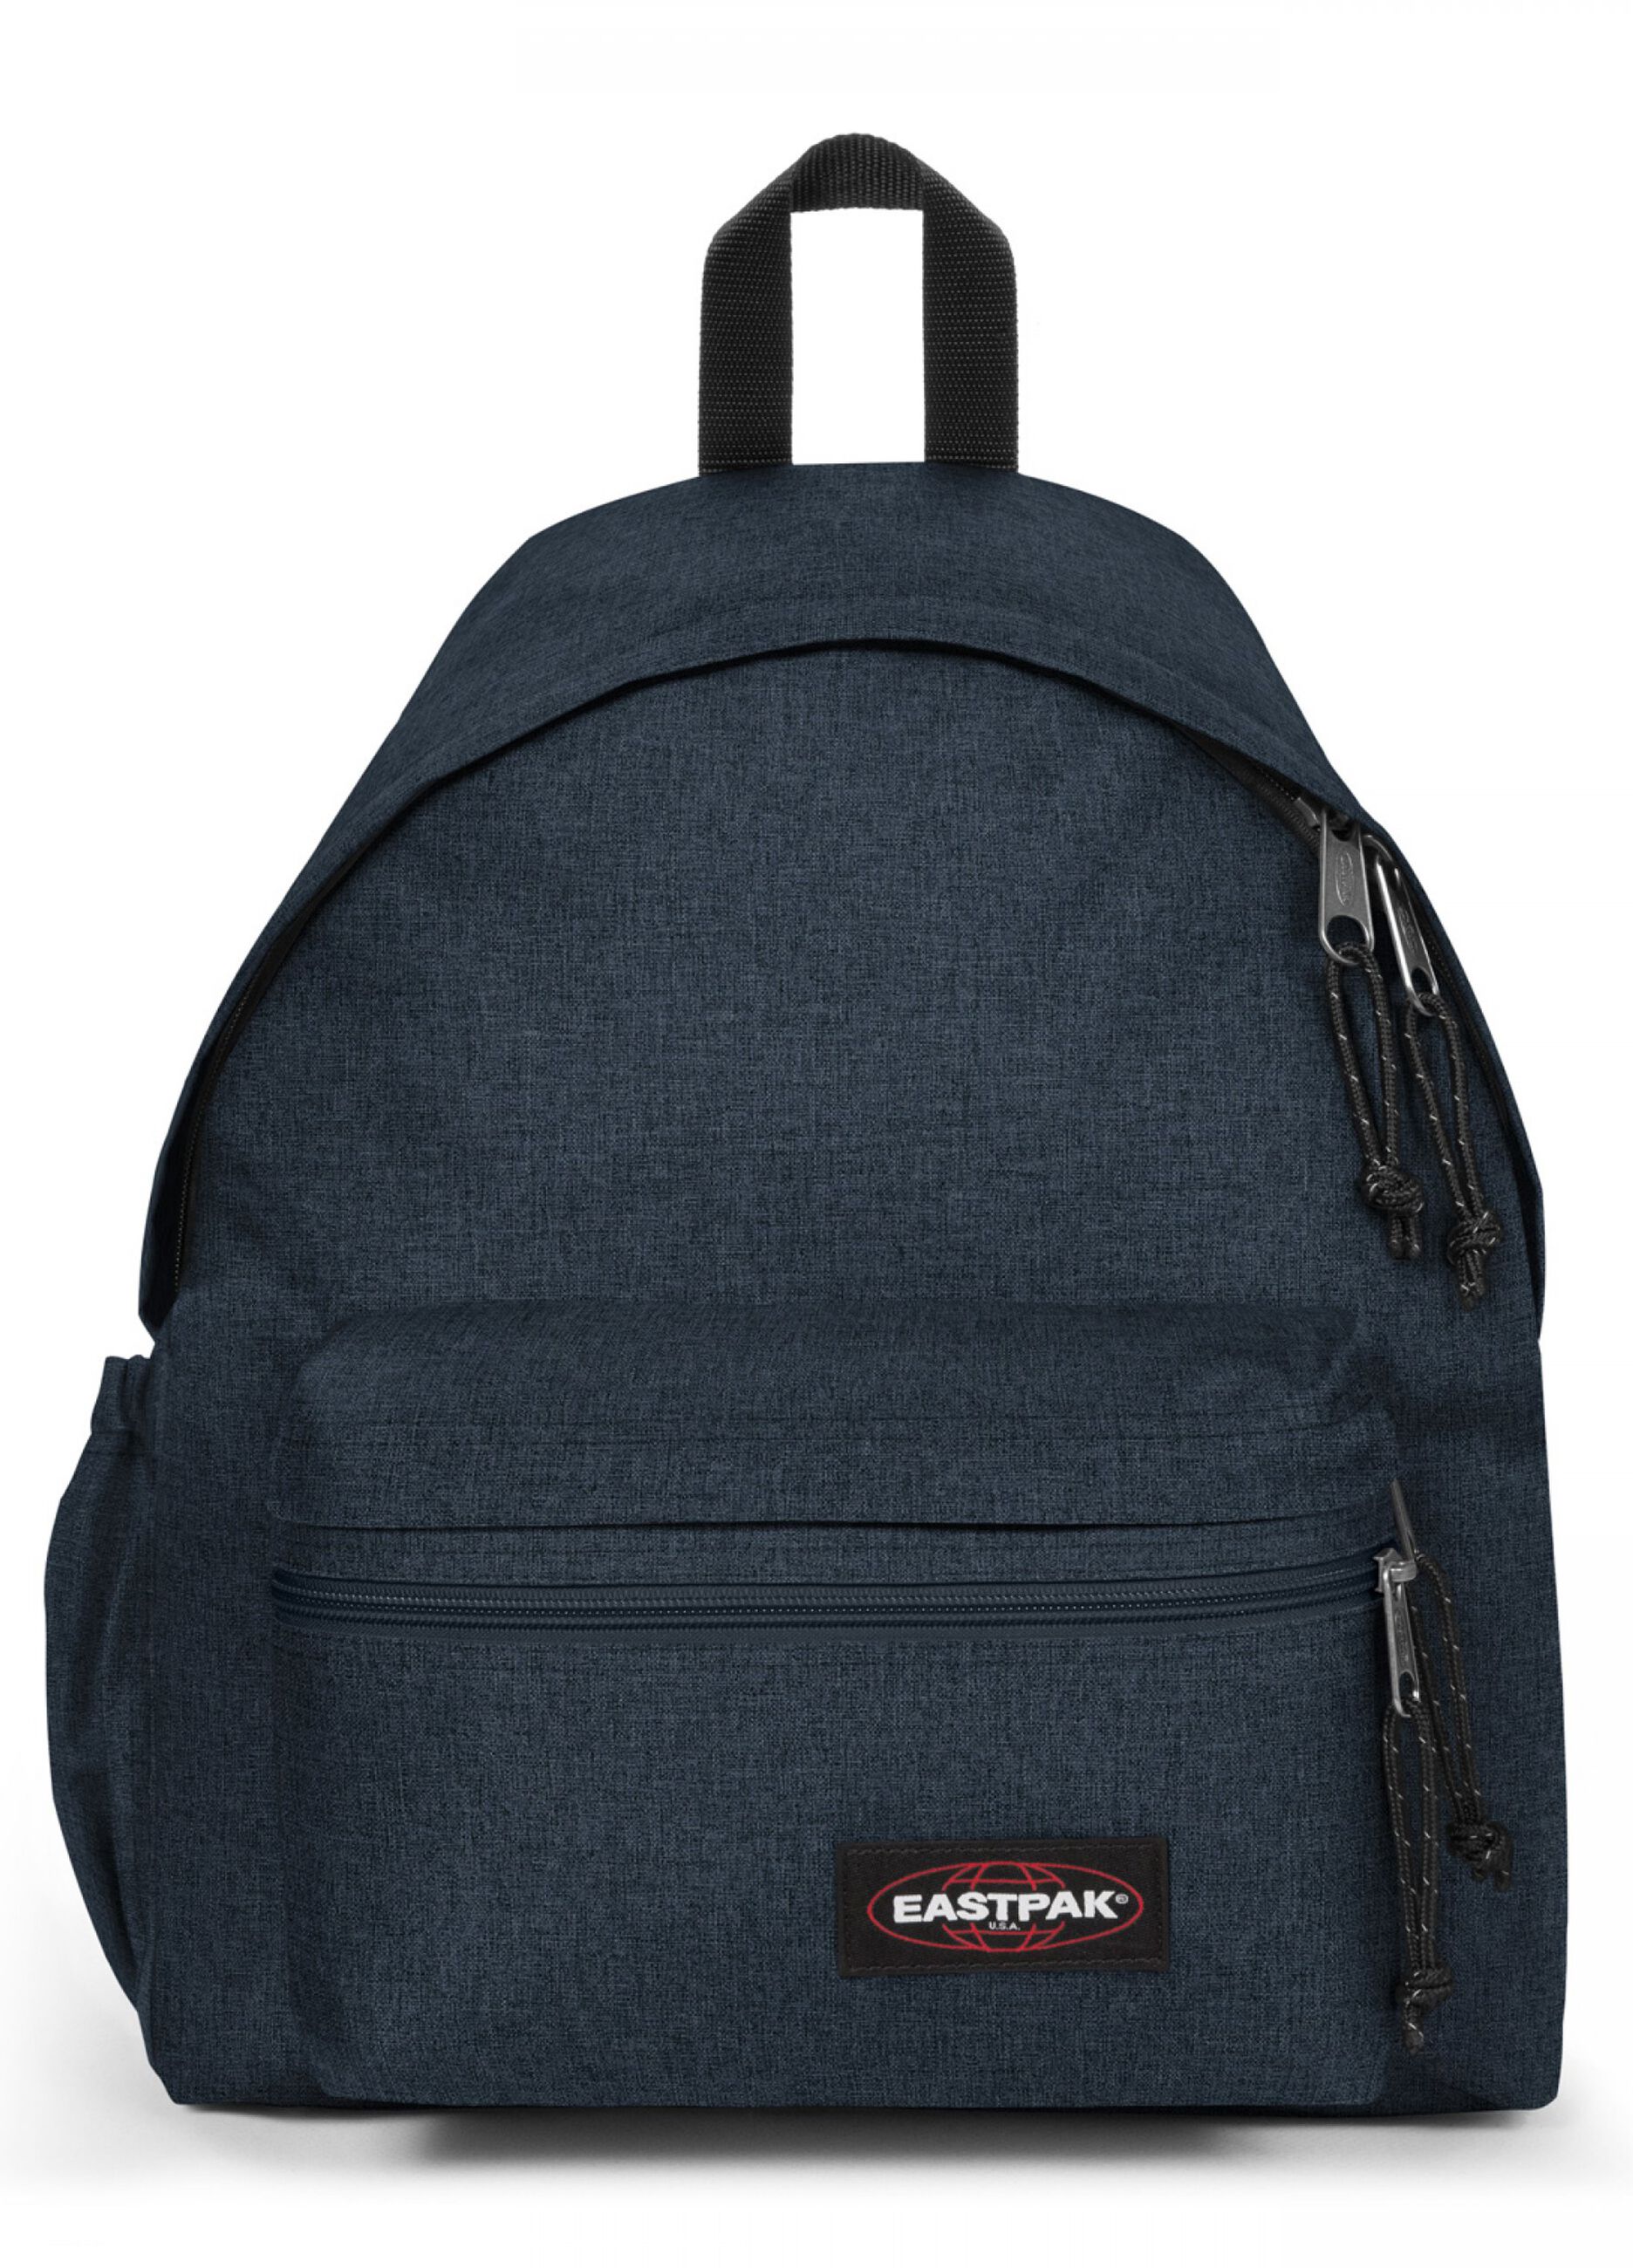 Eastpak Bags Padded Pakr Backpack Bag Constructed Merlot – Black Sheep Store